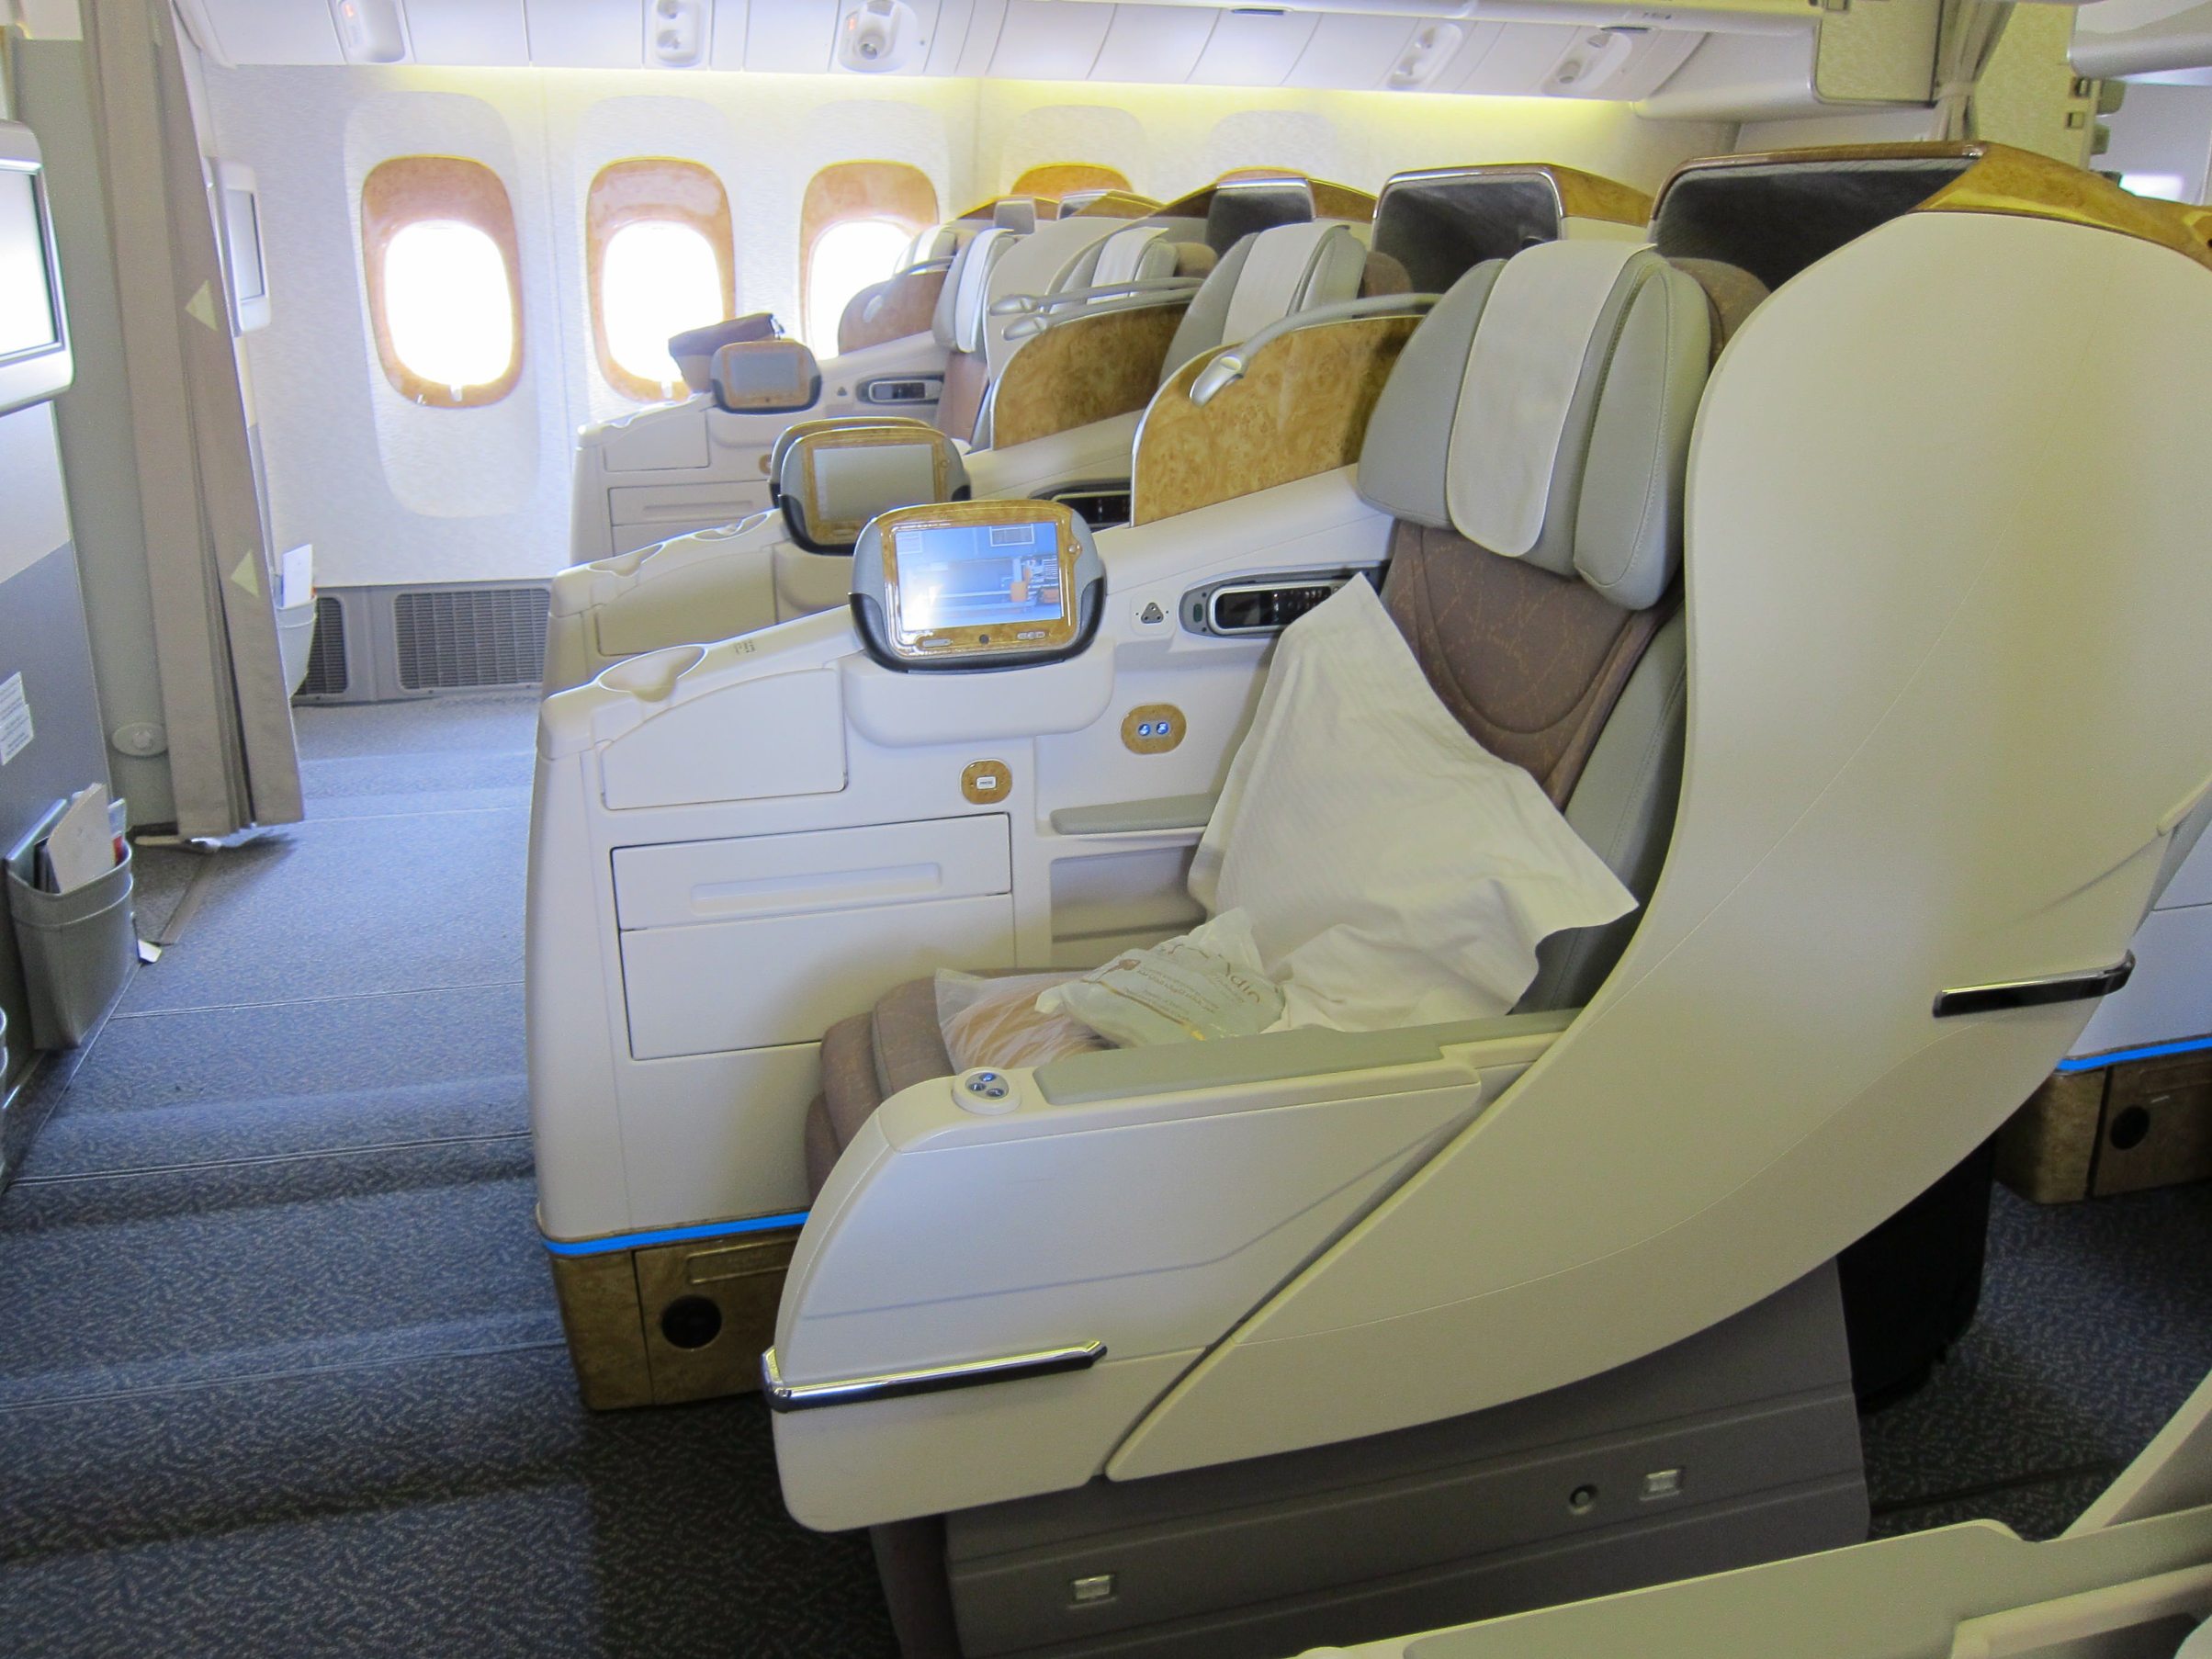 Boeing 777 бизнес класс. Emirates Boeing 777 Business class. Emirates Business class 777. Бизнес класс Эмирейтс Боинг 777 первый класс. Боинг Эмирейтс бизнес класс.